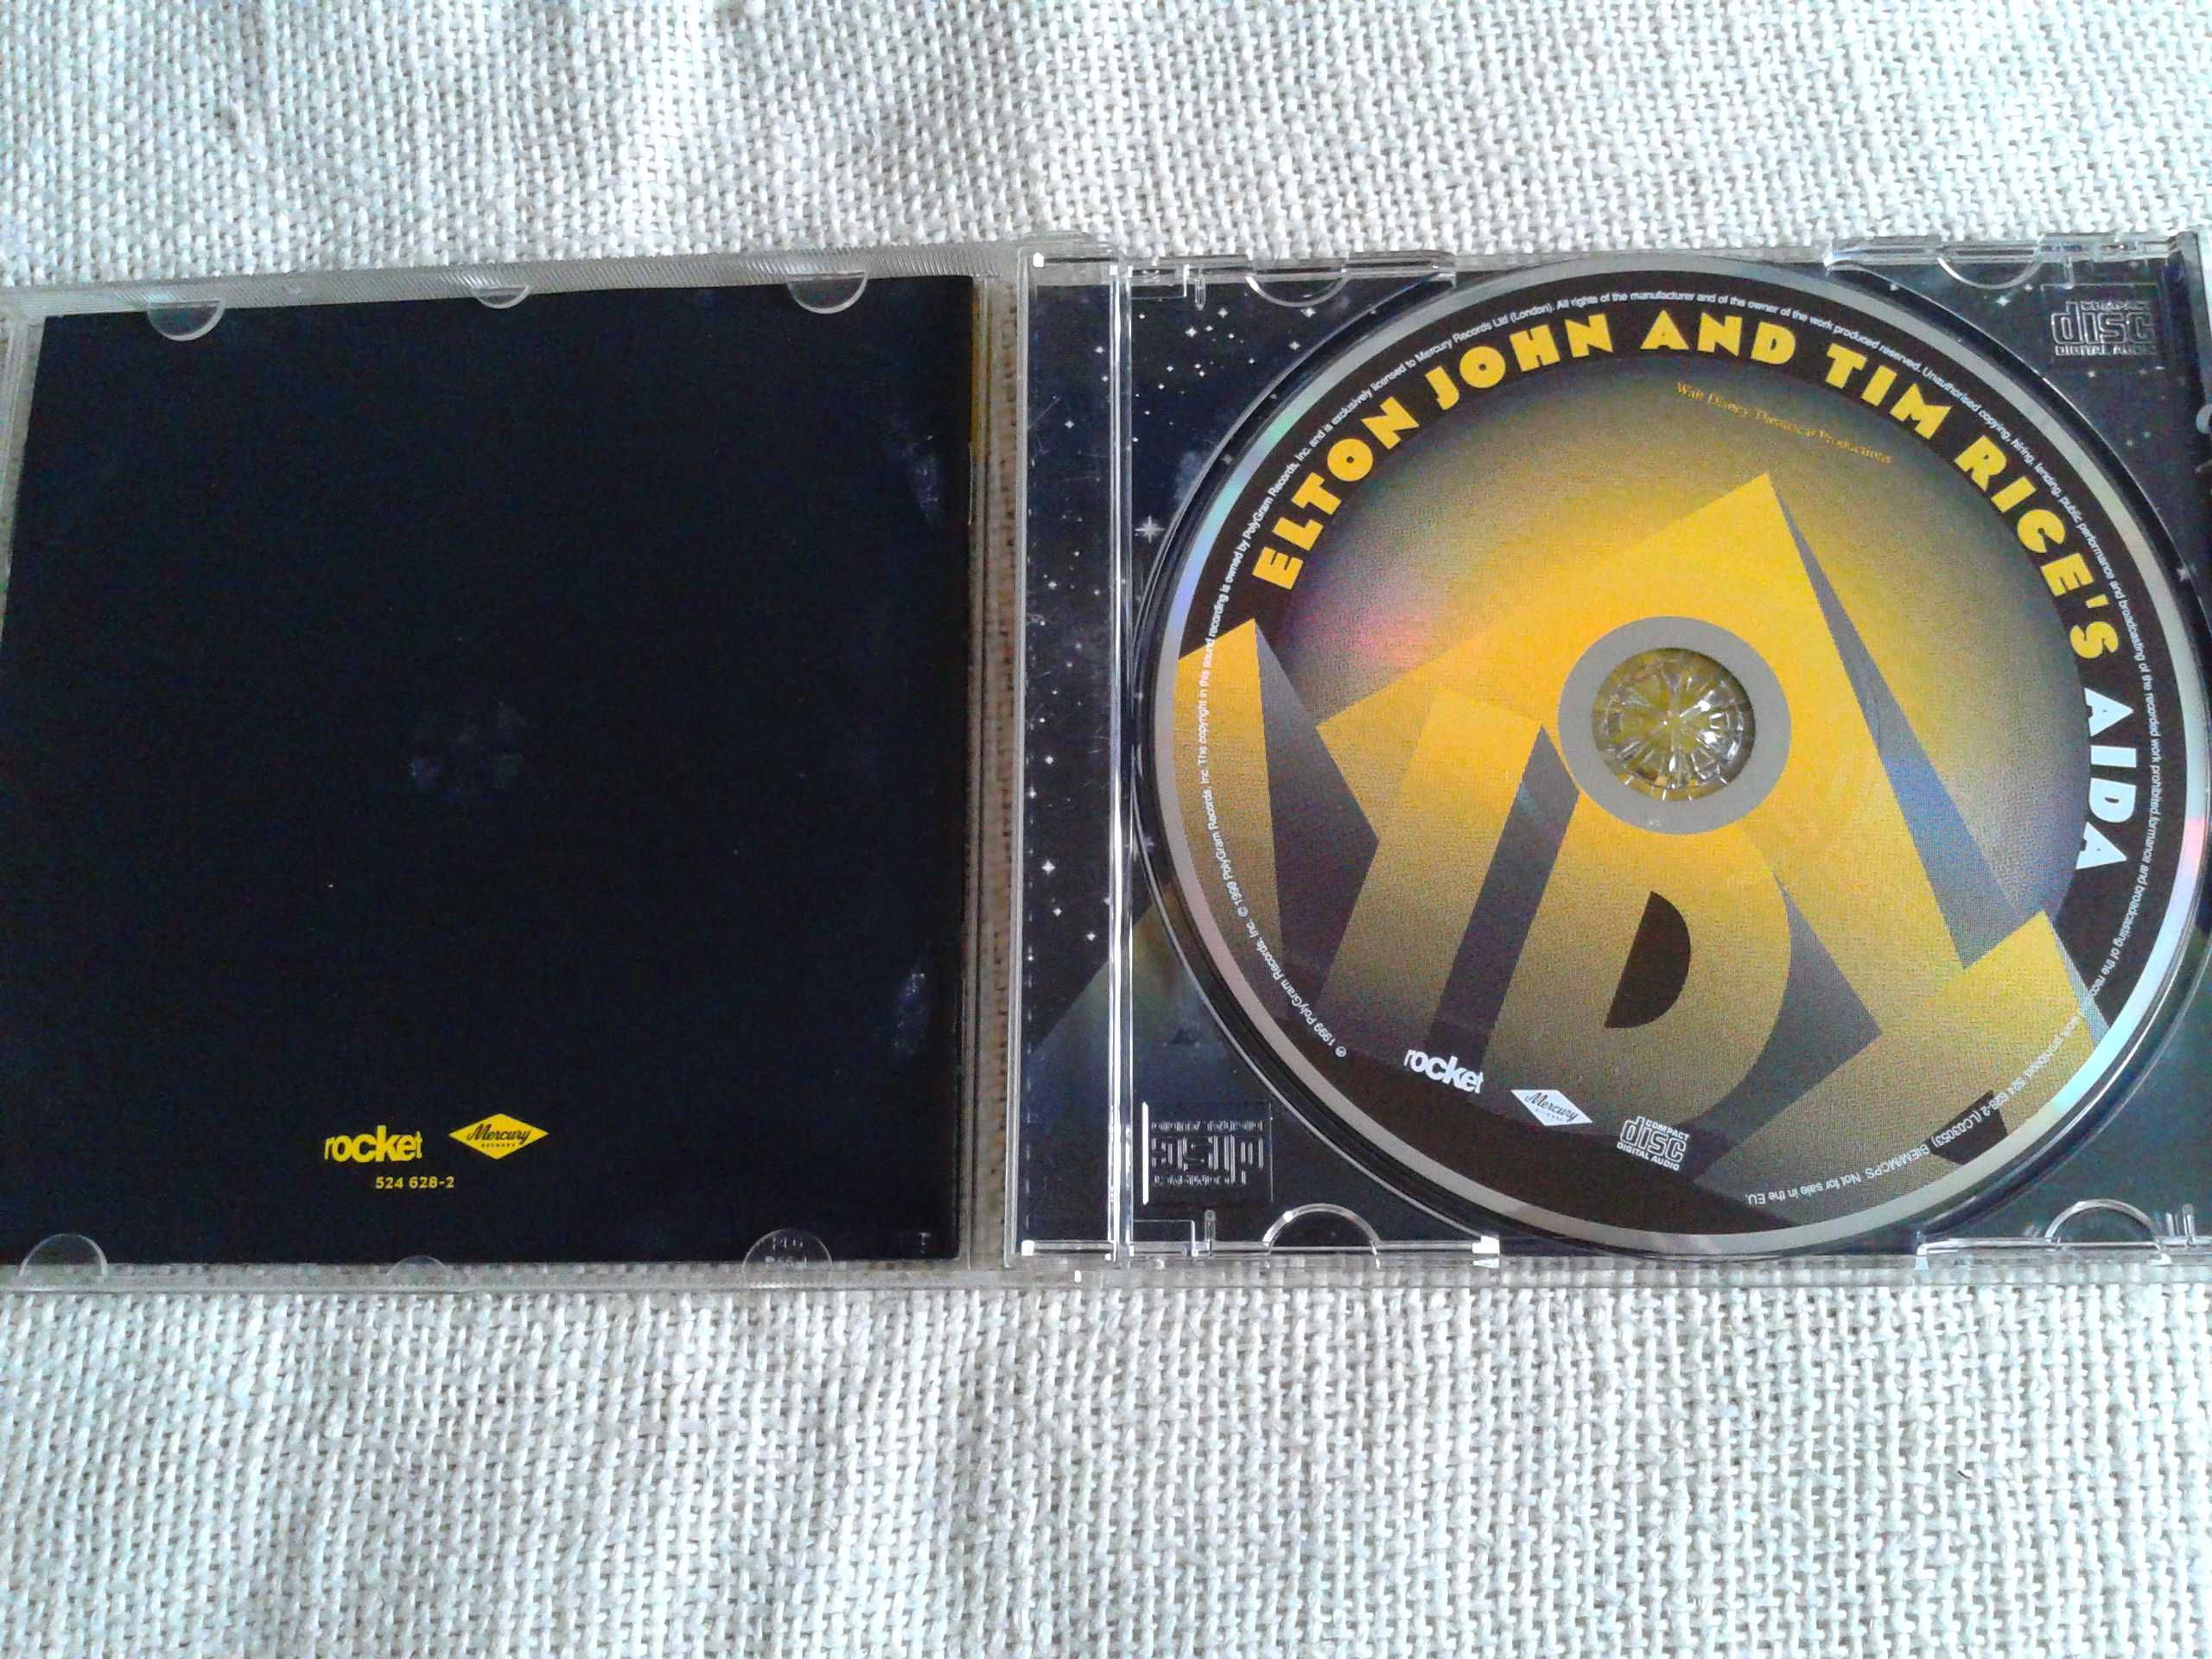 Elton John & Tim Rice - Aida  CD